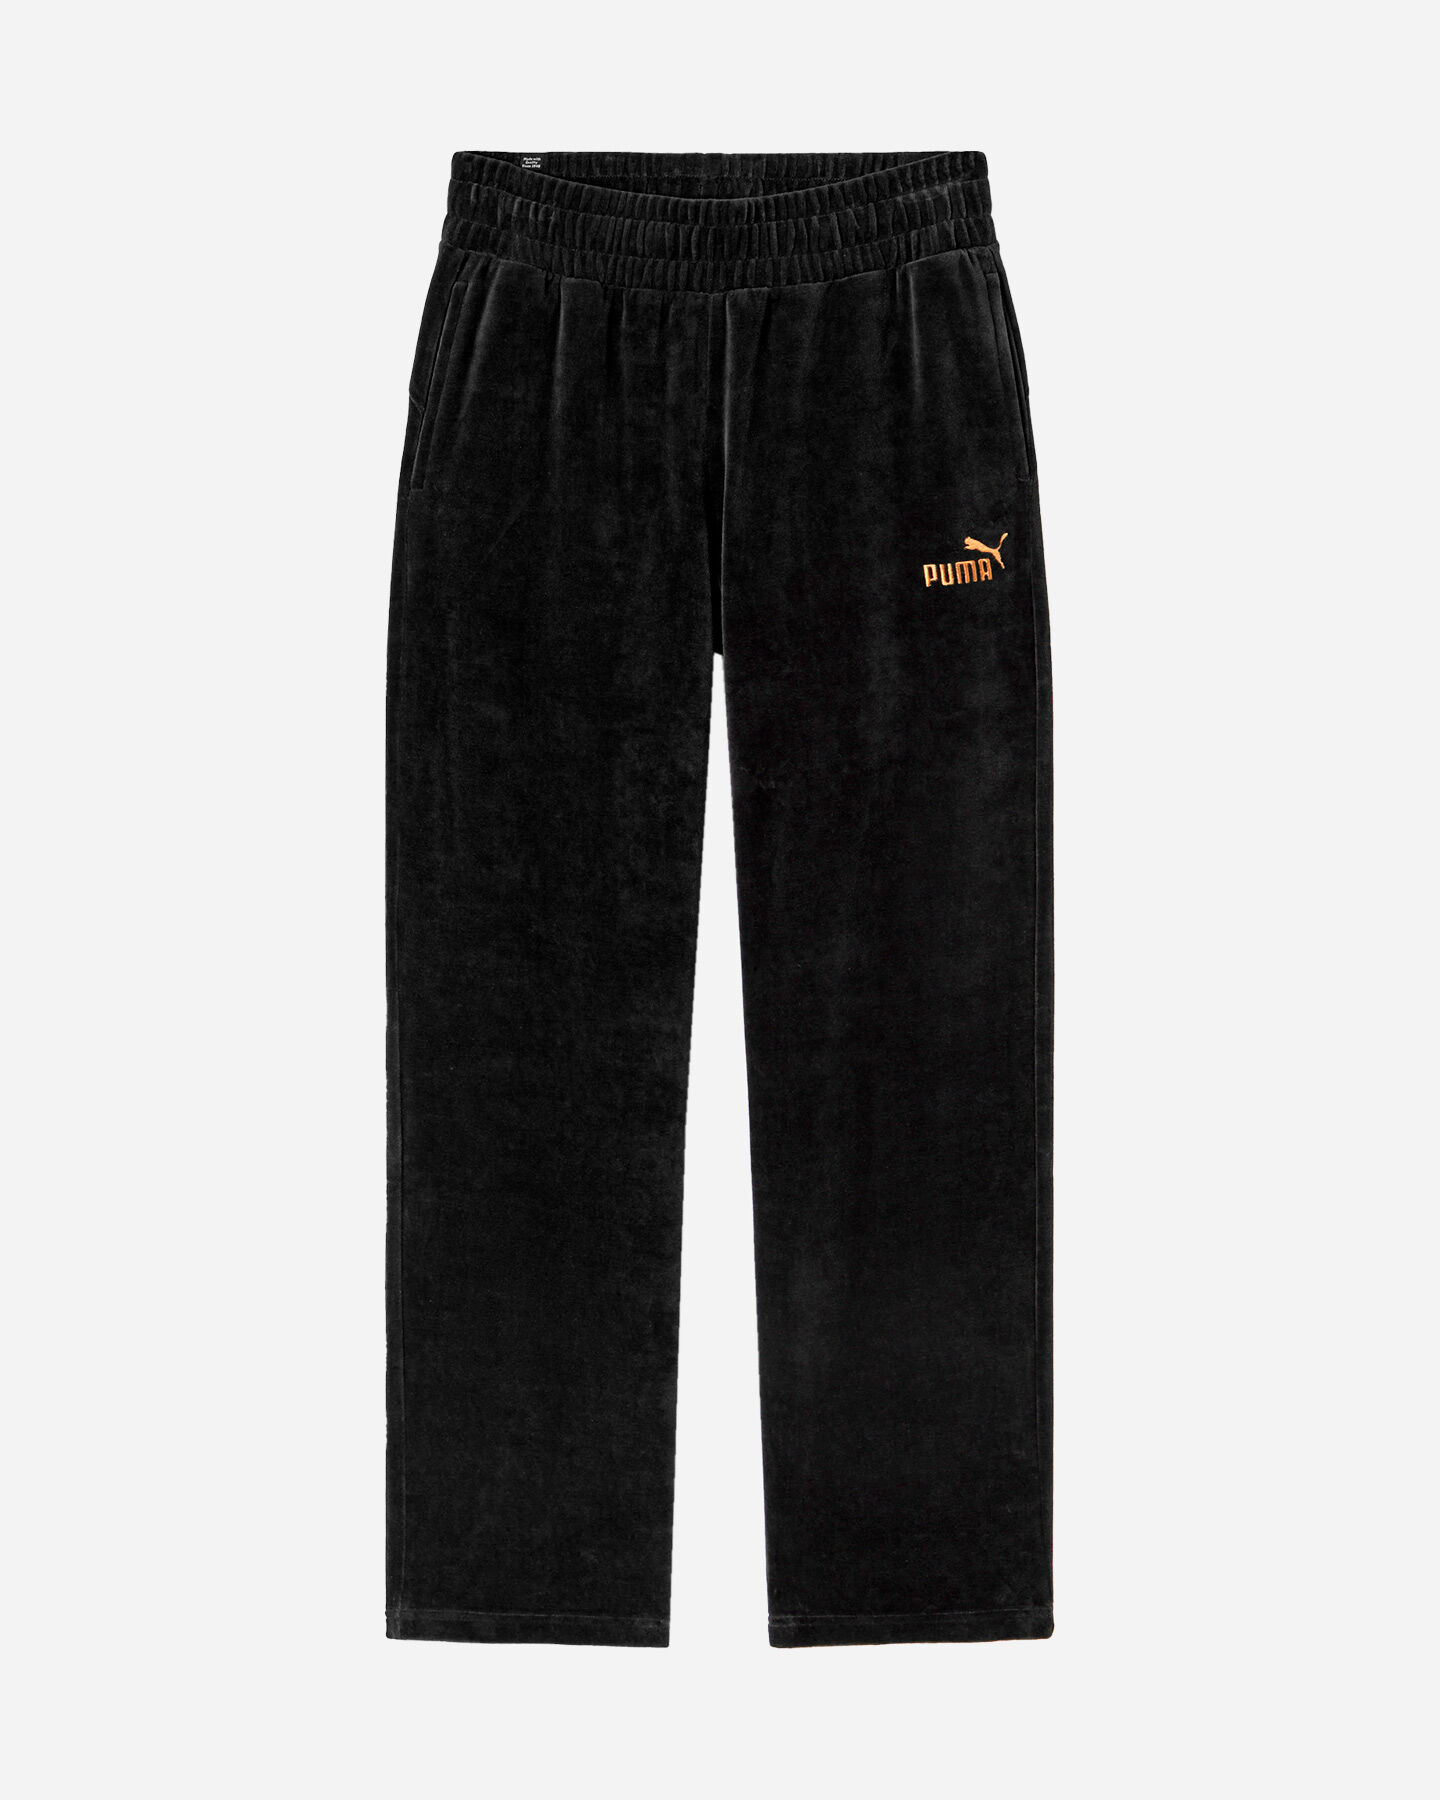  Pantalone PUMA SMALL LOGO W S5615083|01|XS scatto 0